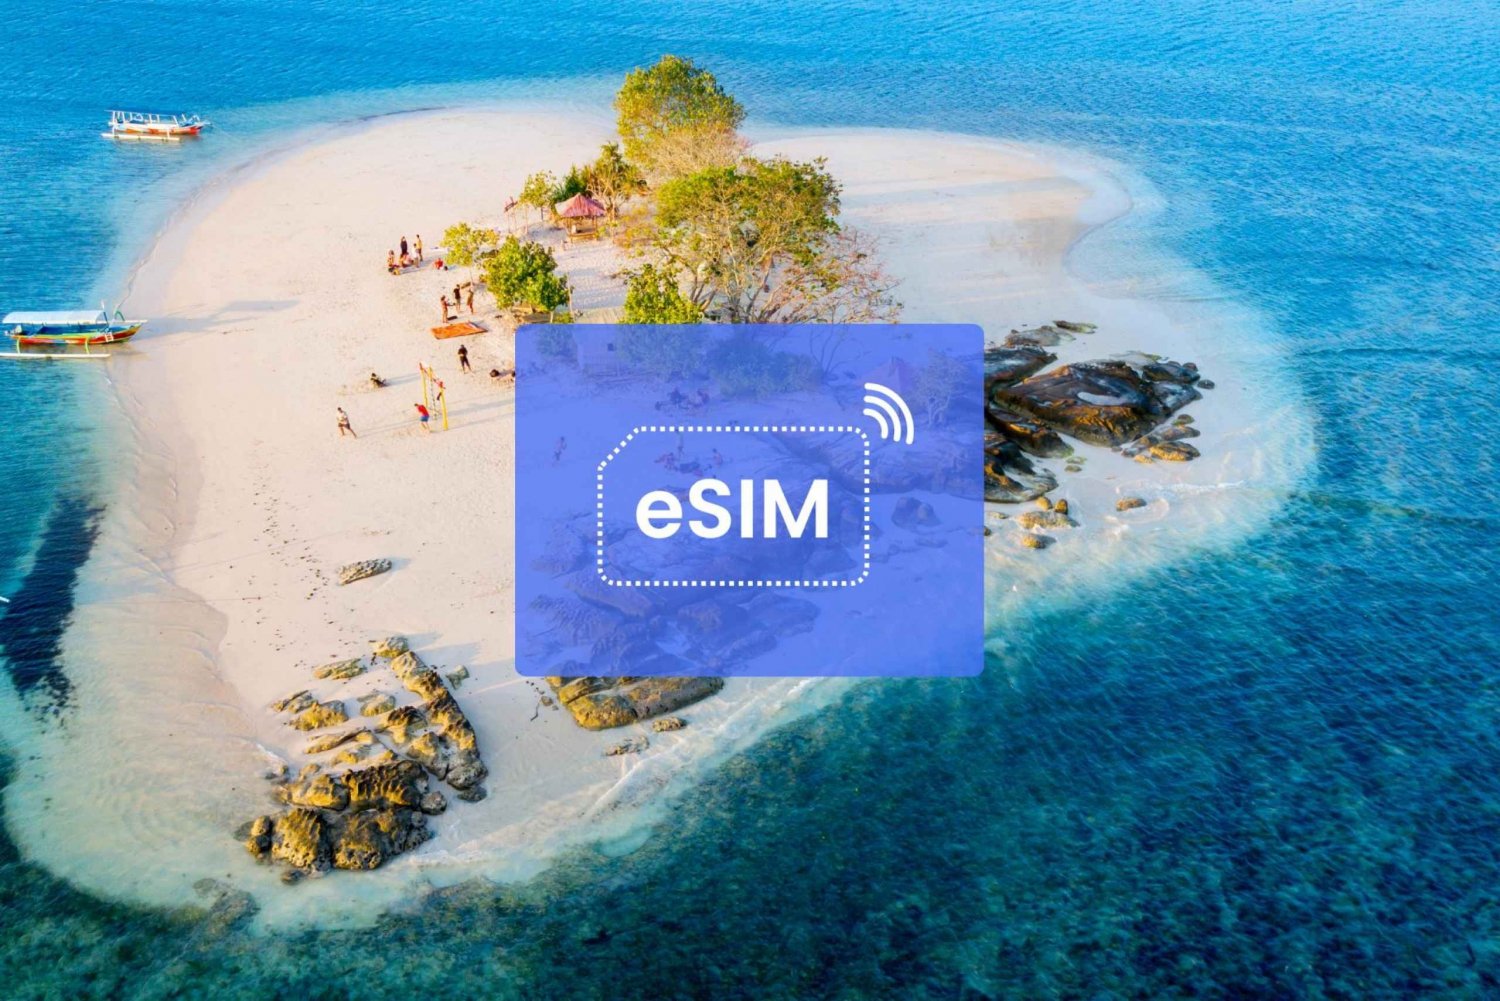 Bali : Indonésie eSIM Roaming Mobile Data Plan